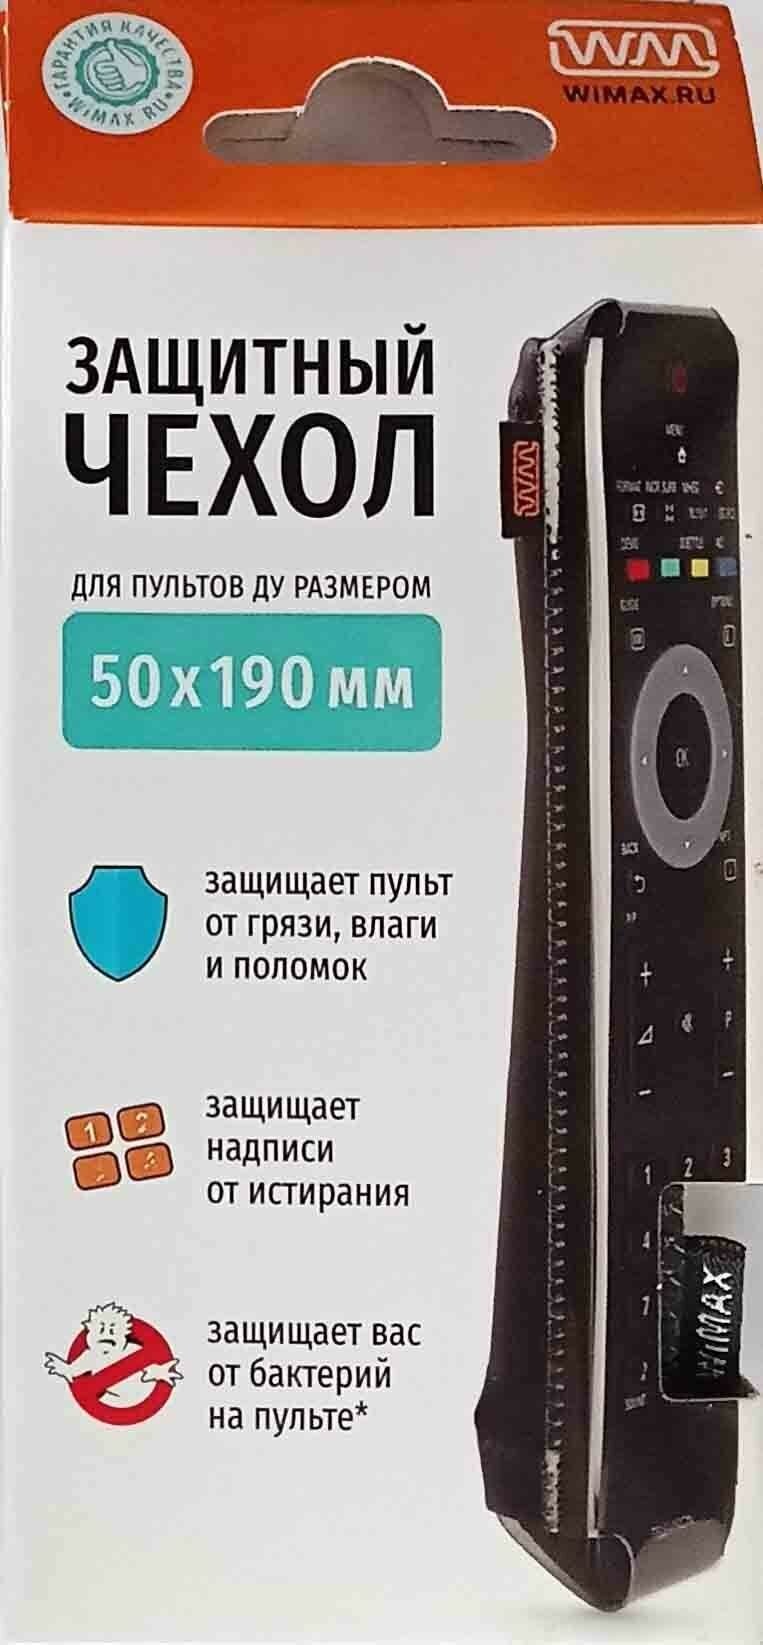 Чехол для ТВ пульта WiMAX - фото №1